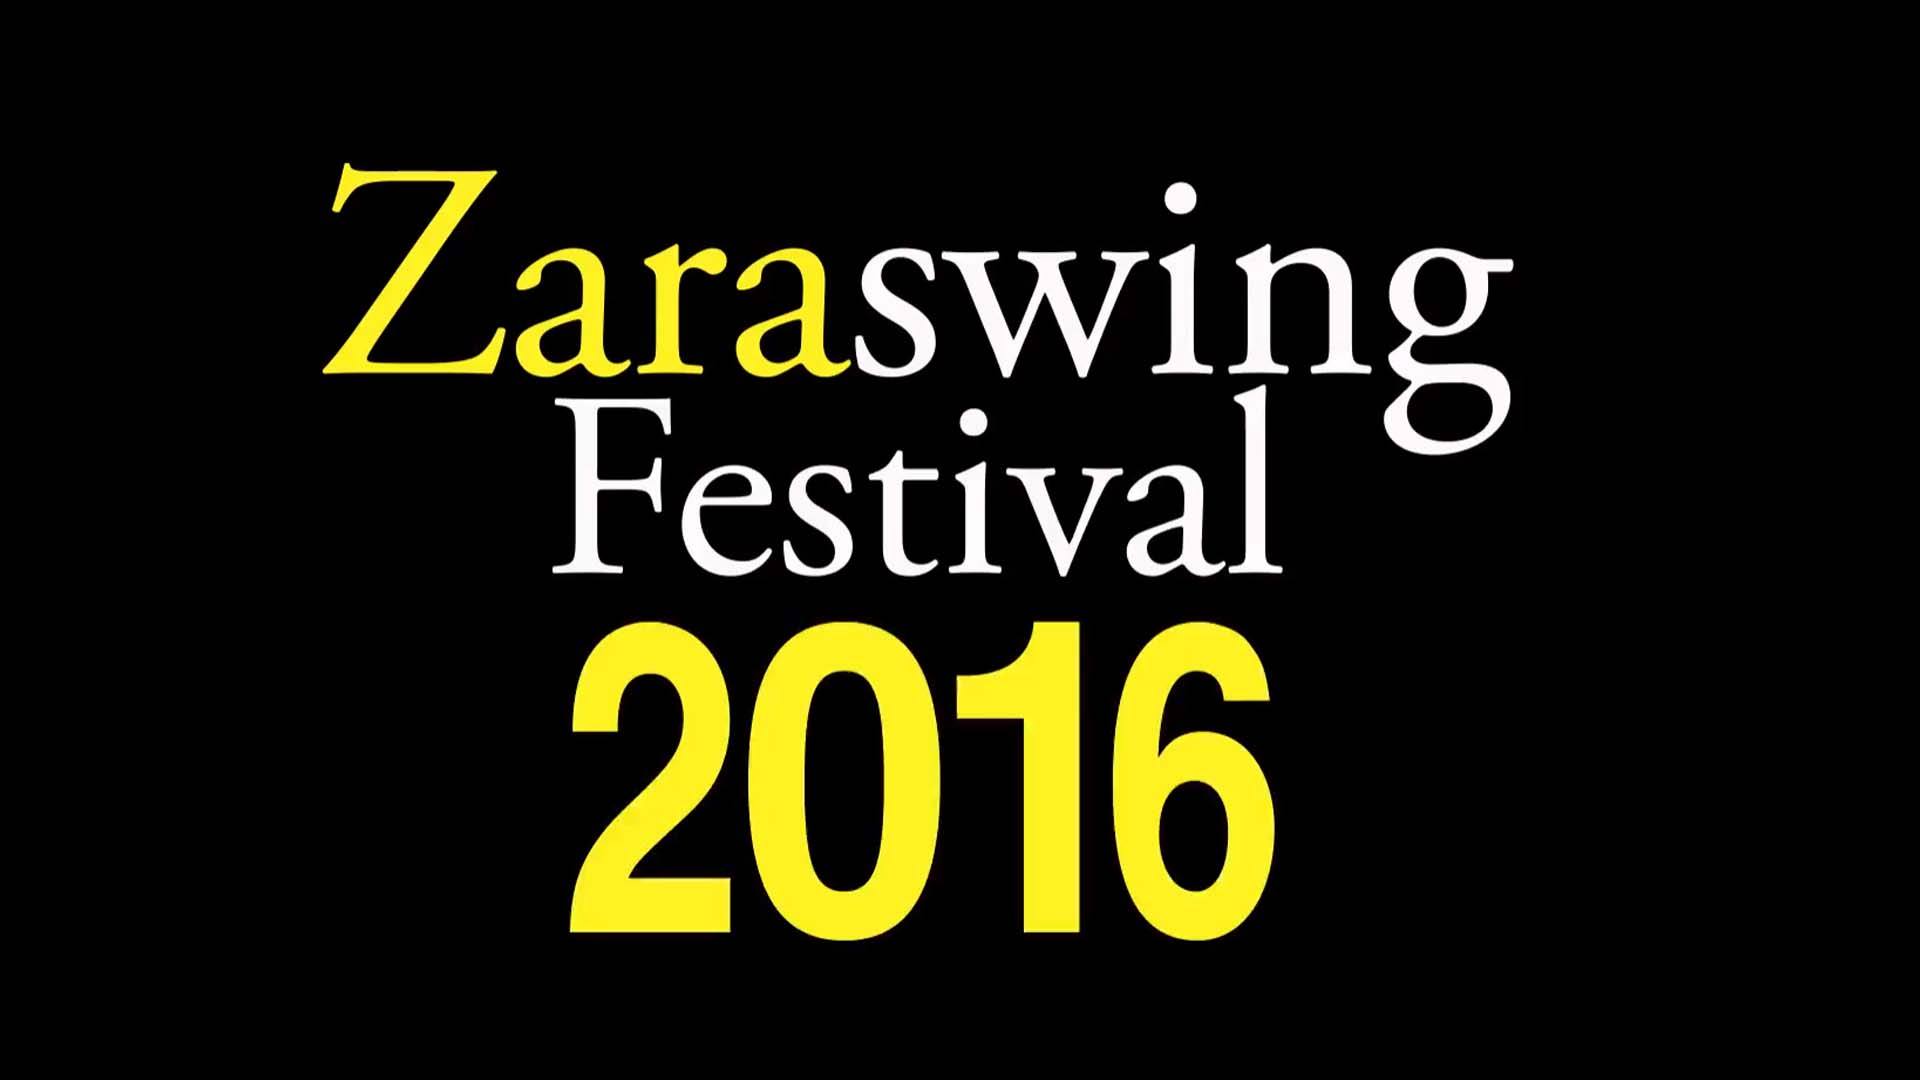 Zaraswing Festival 2016